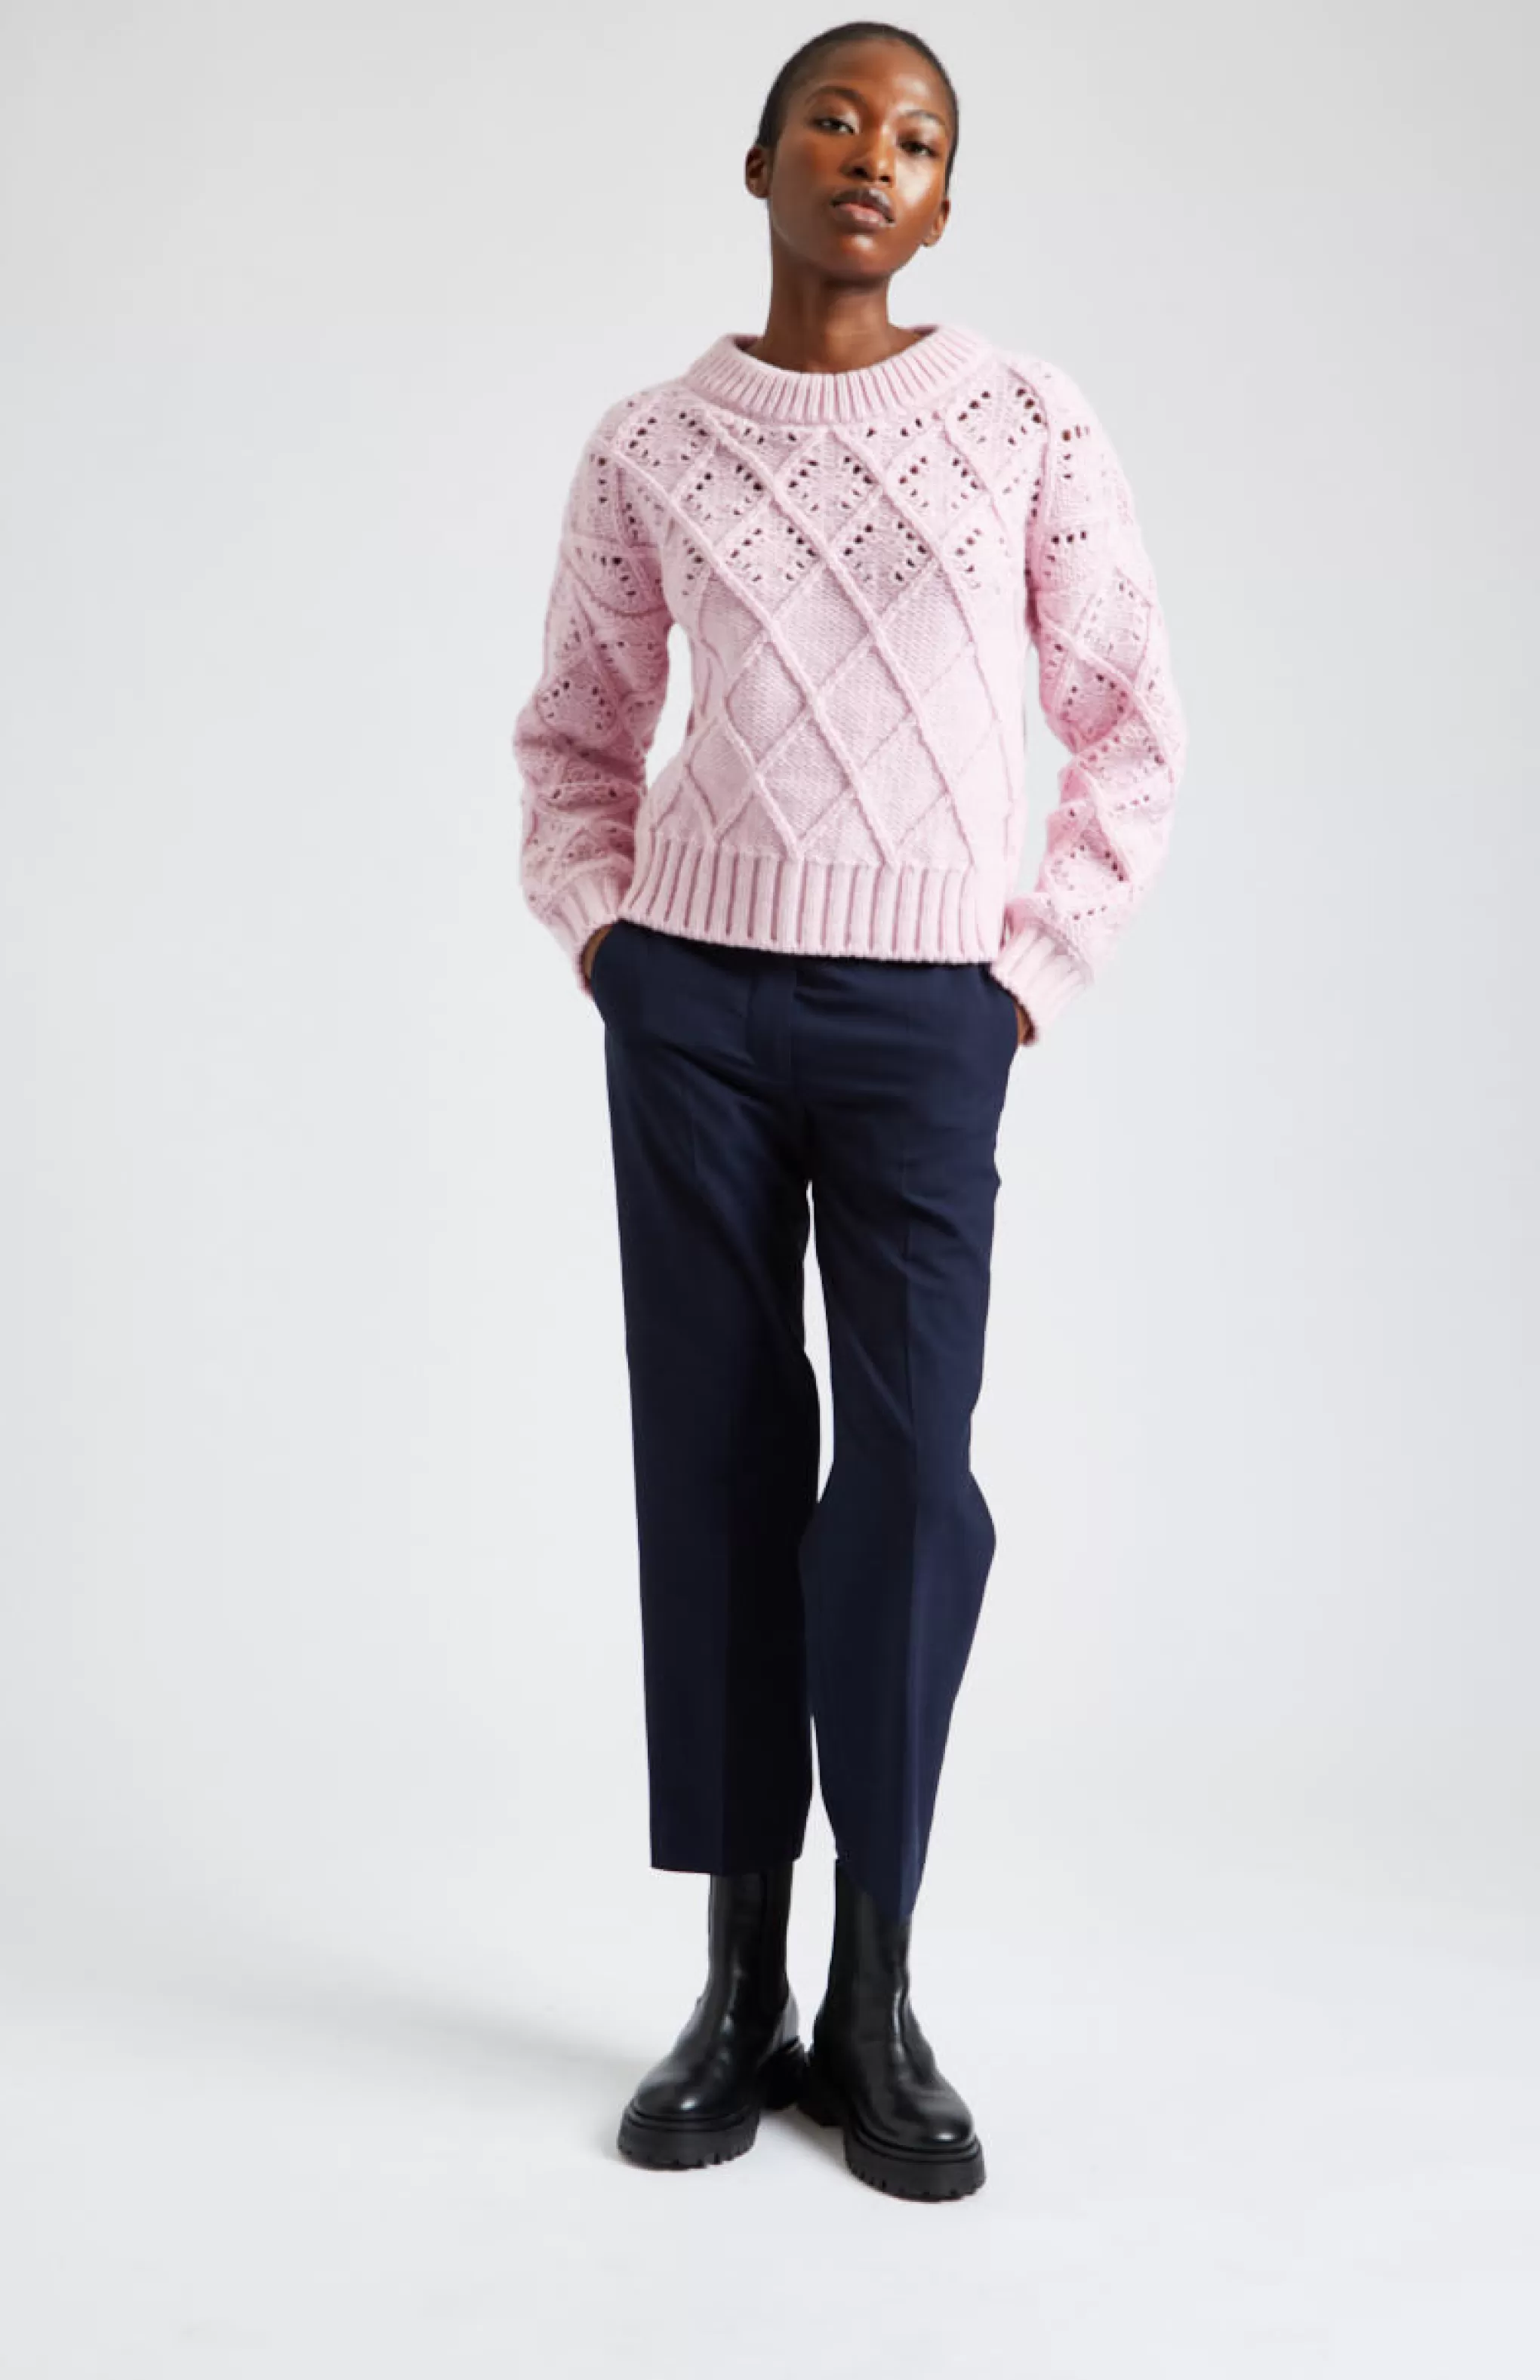 Best Sale Superfine Wool Jumper With Allover Diamond Pattern In Powder Pink Men/Women Argyle